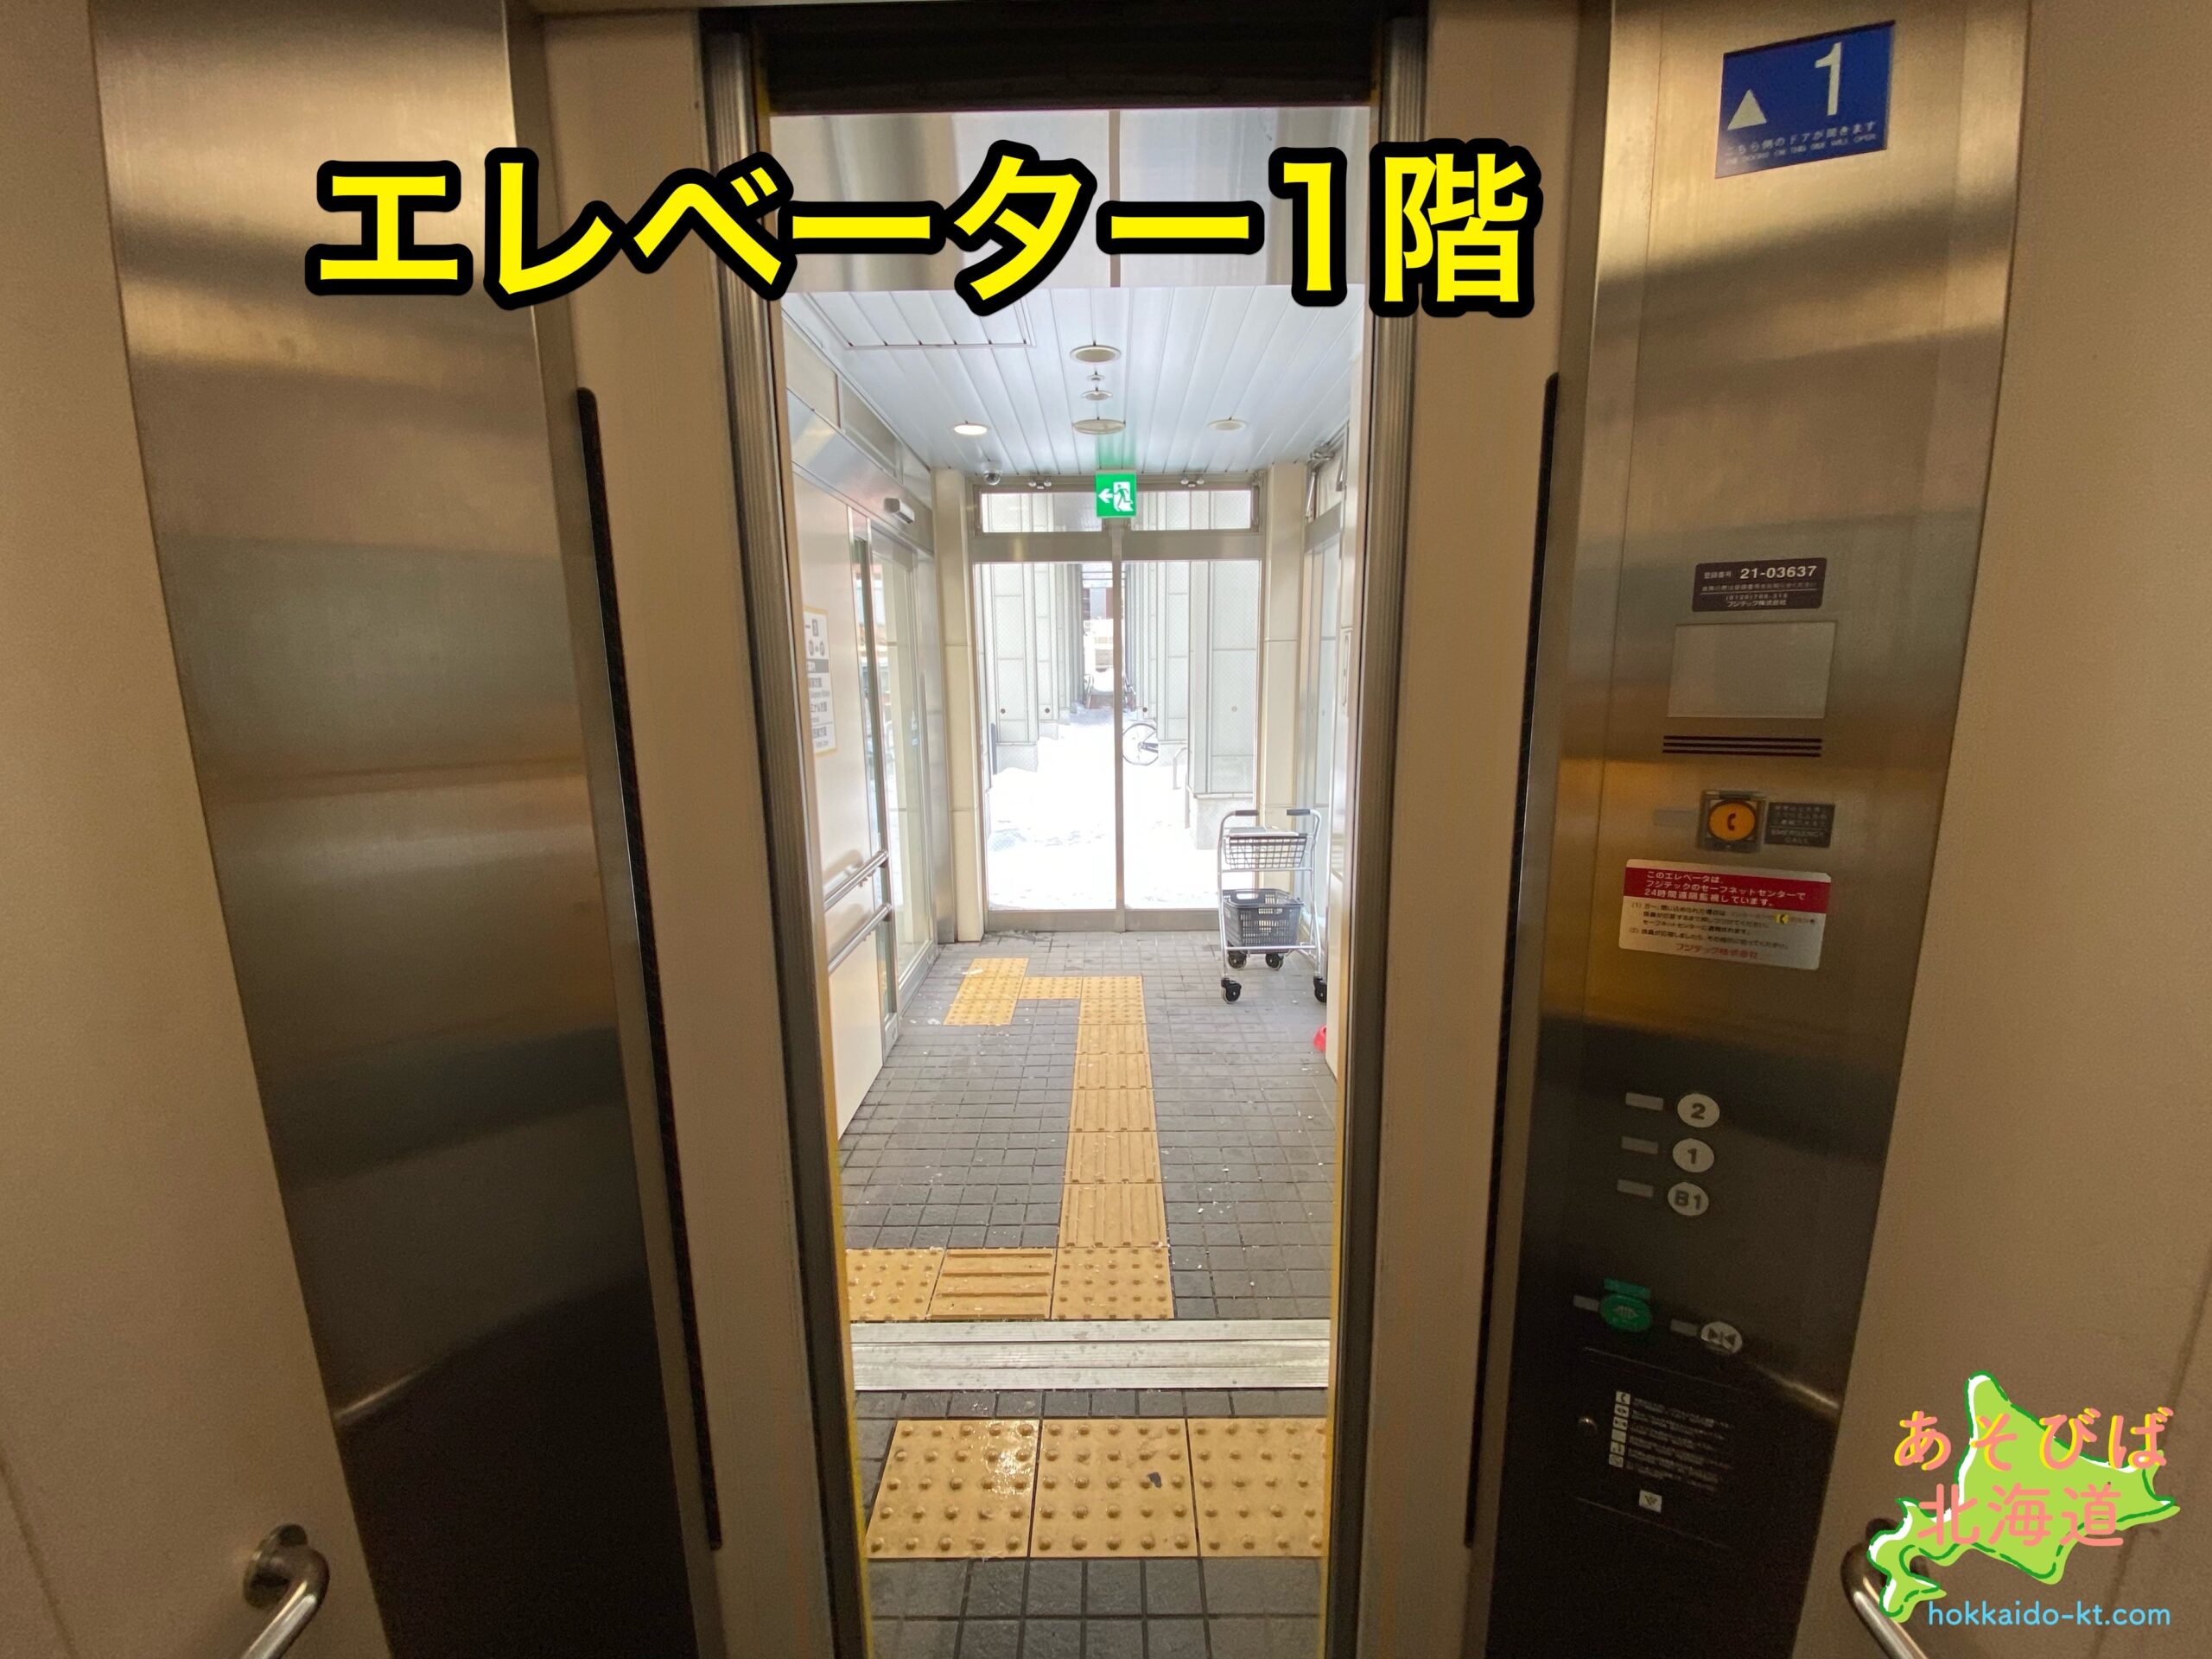 新札幌駅エレベーター1階